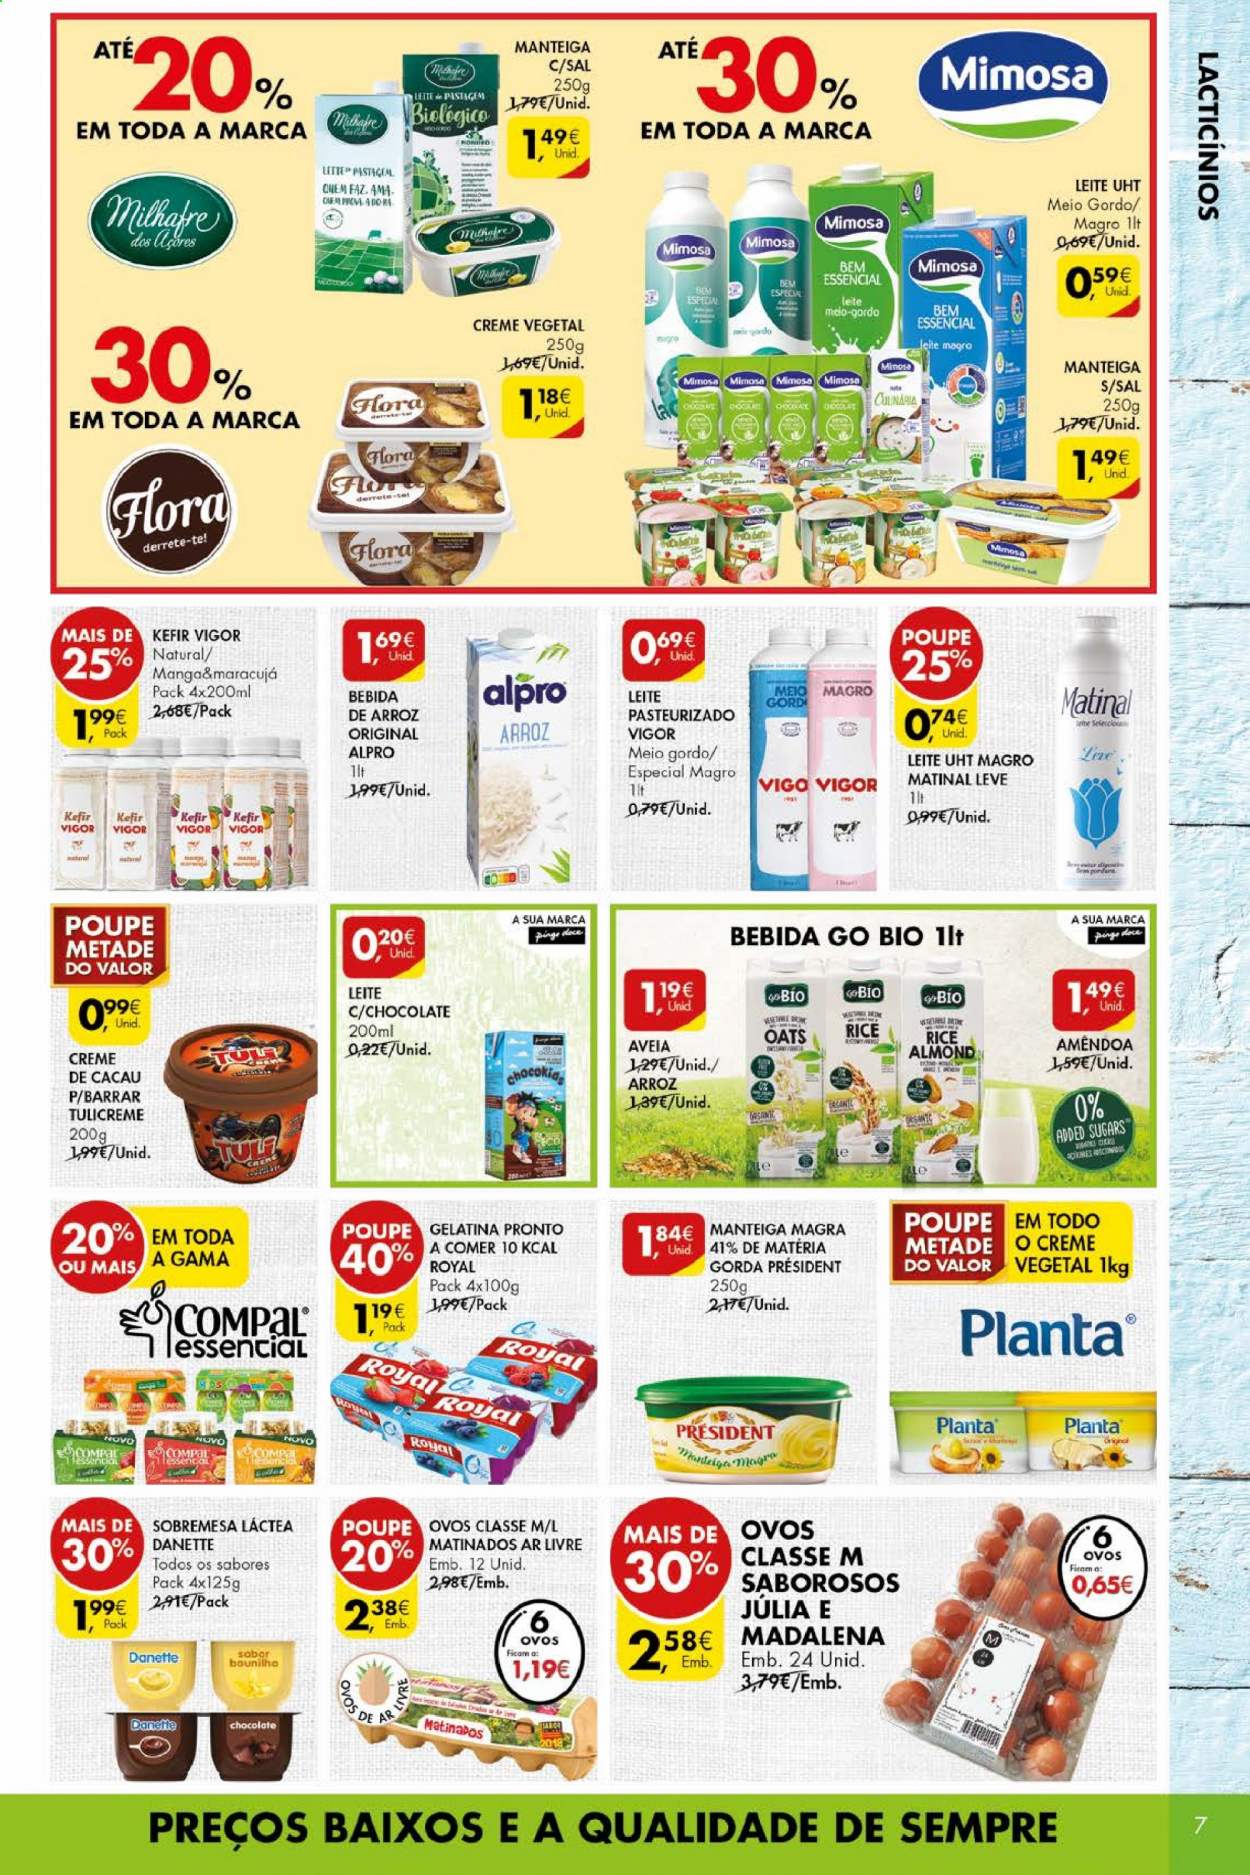 thumbnail - Folheto Pingo Doce - 9.3.2021 - 15.3.2021 - Produtos em promoção - maracujá, Danette, Mimosa, leite, bebida de arroz, manteiga, gelatina, aveia. Página 7.